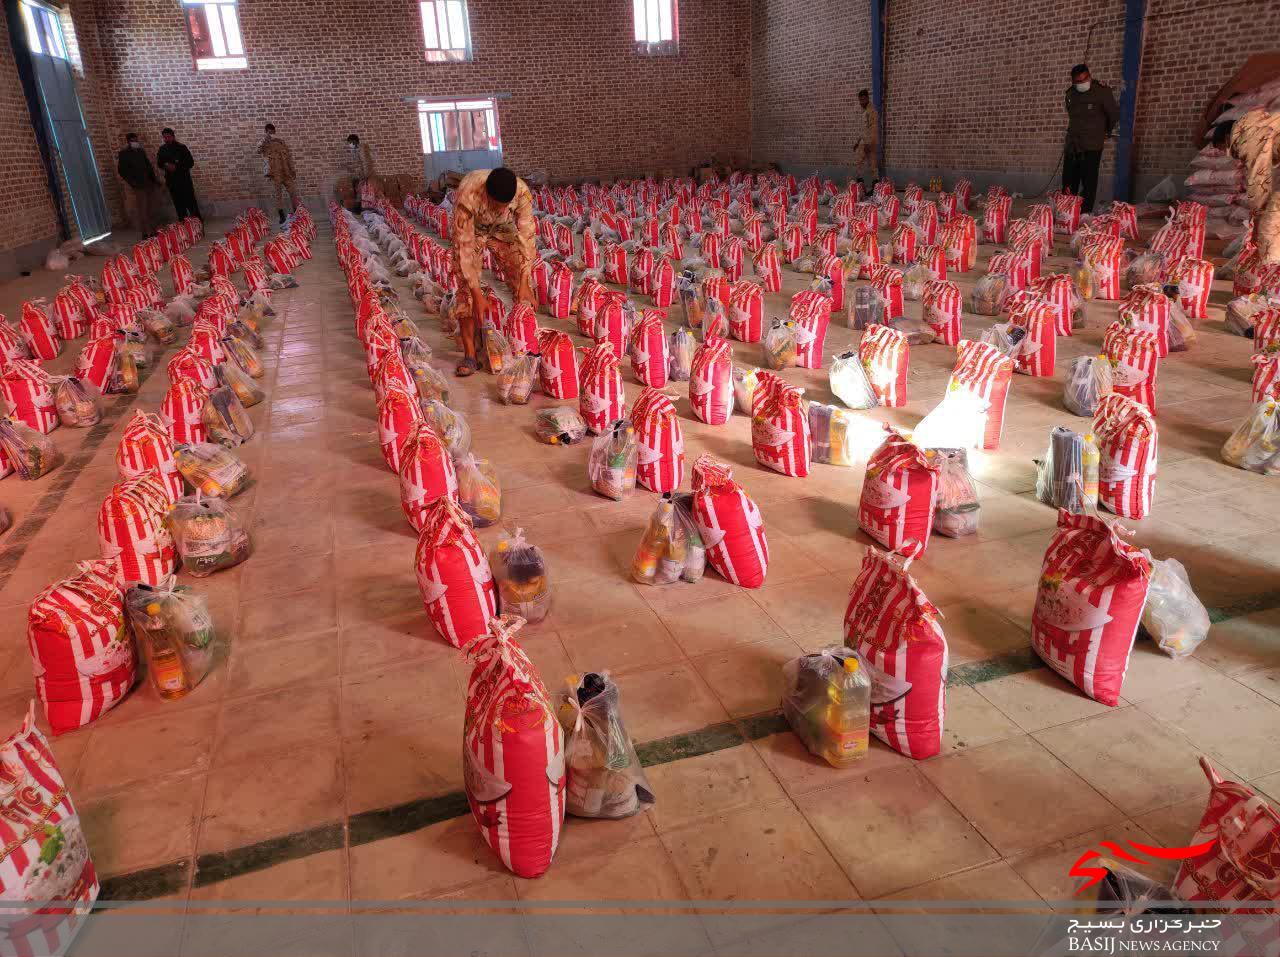 850 بسته کمک معیشتی به مردم نیازمند در قالب طرح شهید سیمانی توزیع گردید.